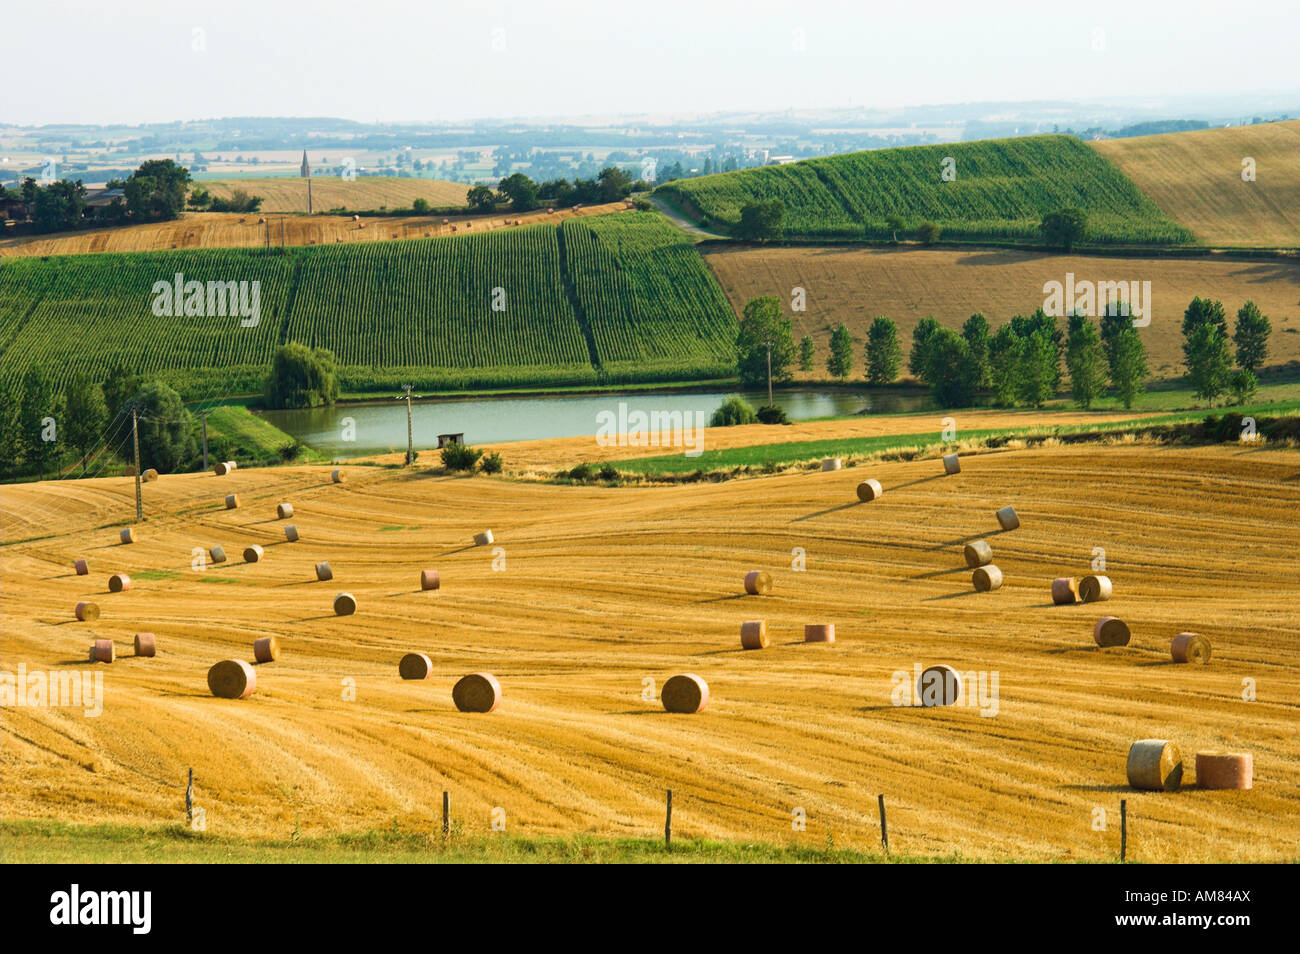 Hay rolls in Gascony field Stock Photo